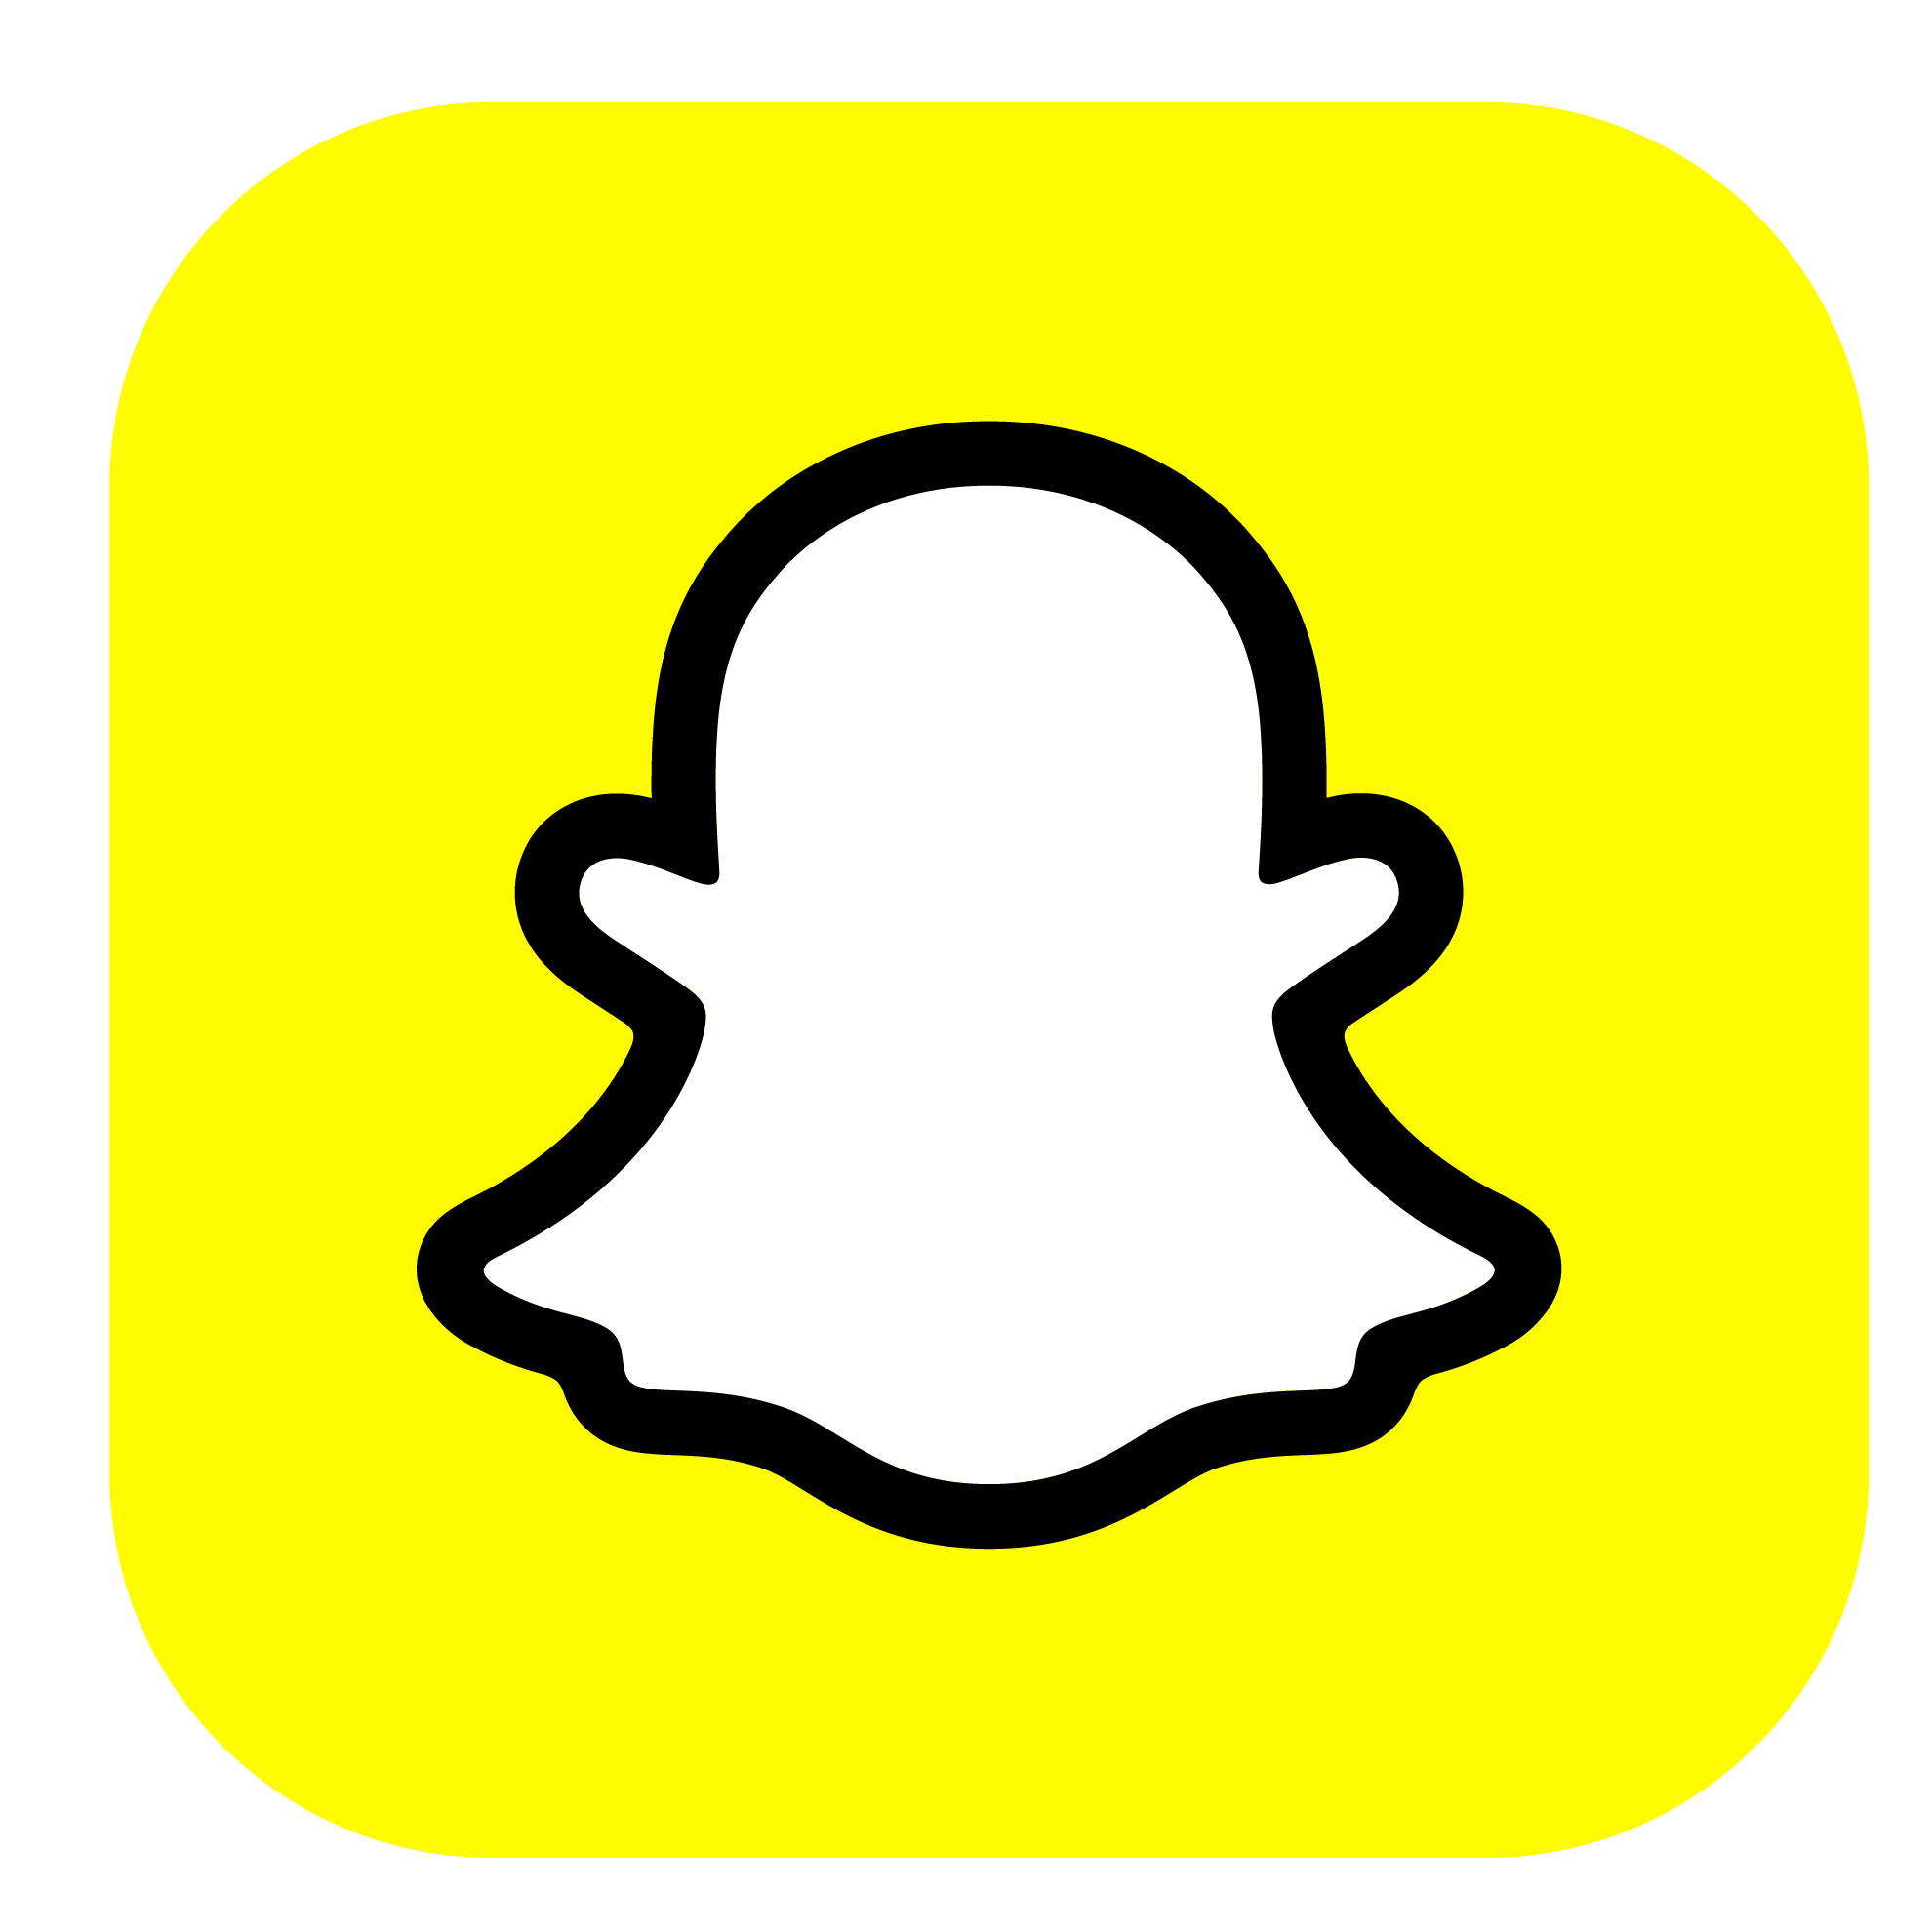 Logotipo Snapchat con tu recarga telefónica Movistar prepago ilimitado